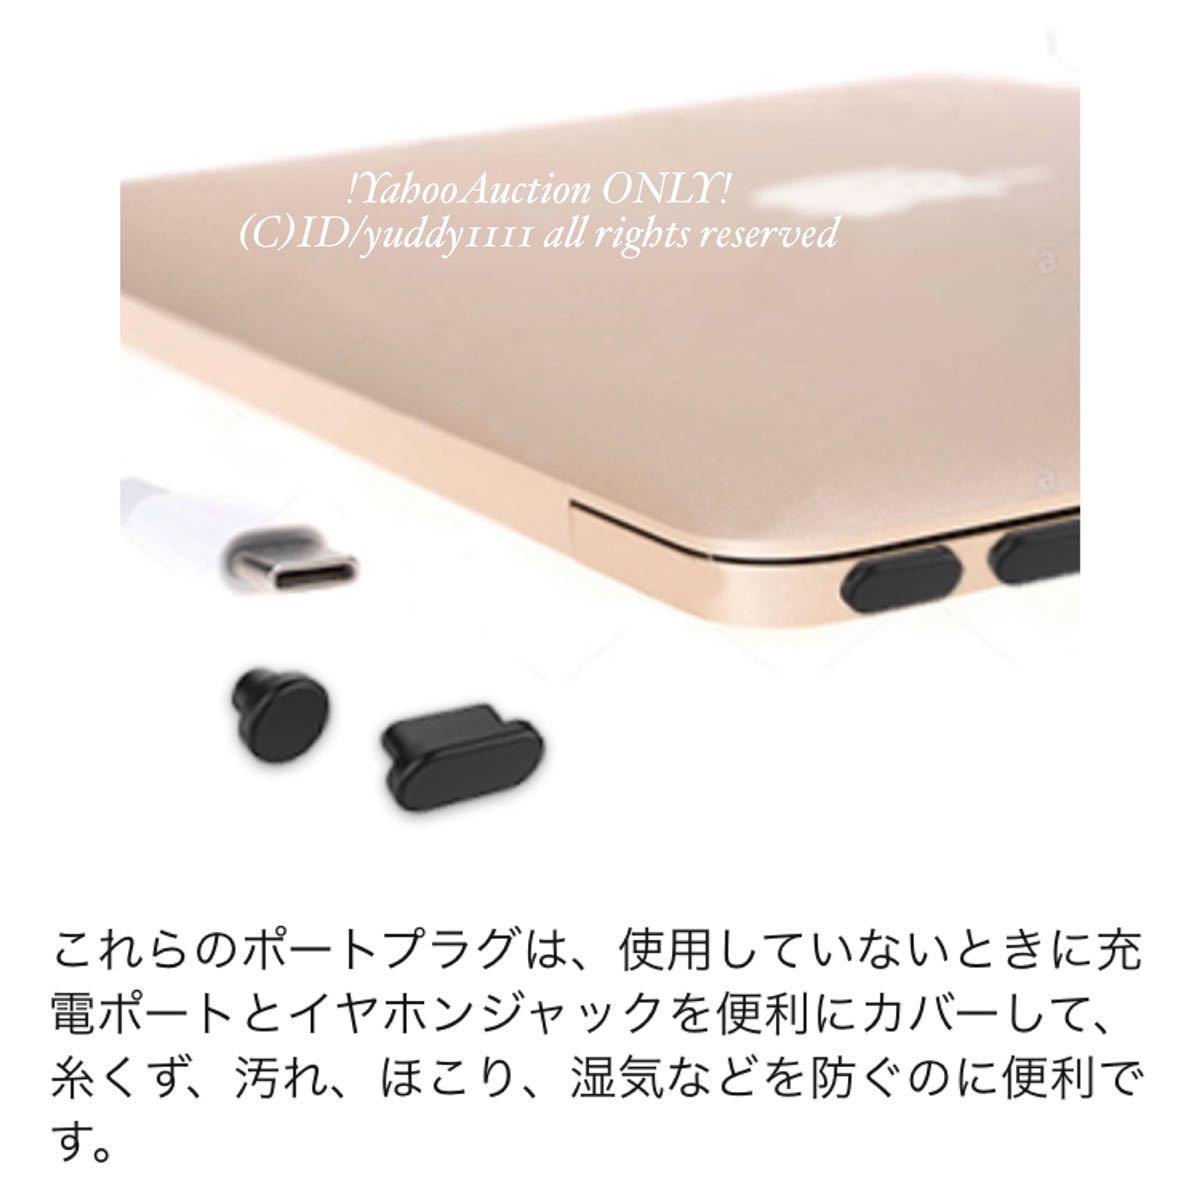 新品 ProCase 2019 MacbookPro用 ダストプラグ シリコン ポート プラグ カバー コネクタキャップ 防塵プラグ カーブ型 ジャックピアス 即決の画像6